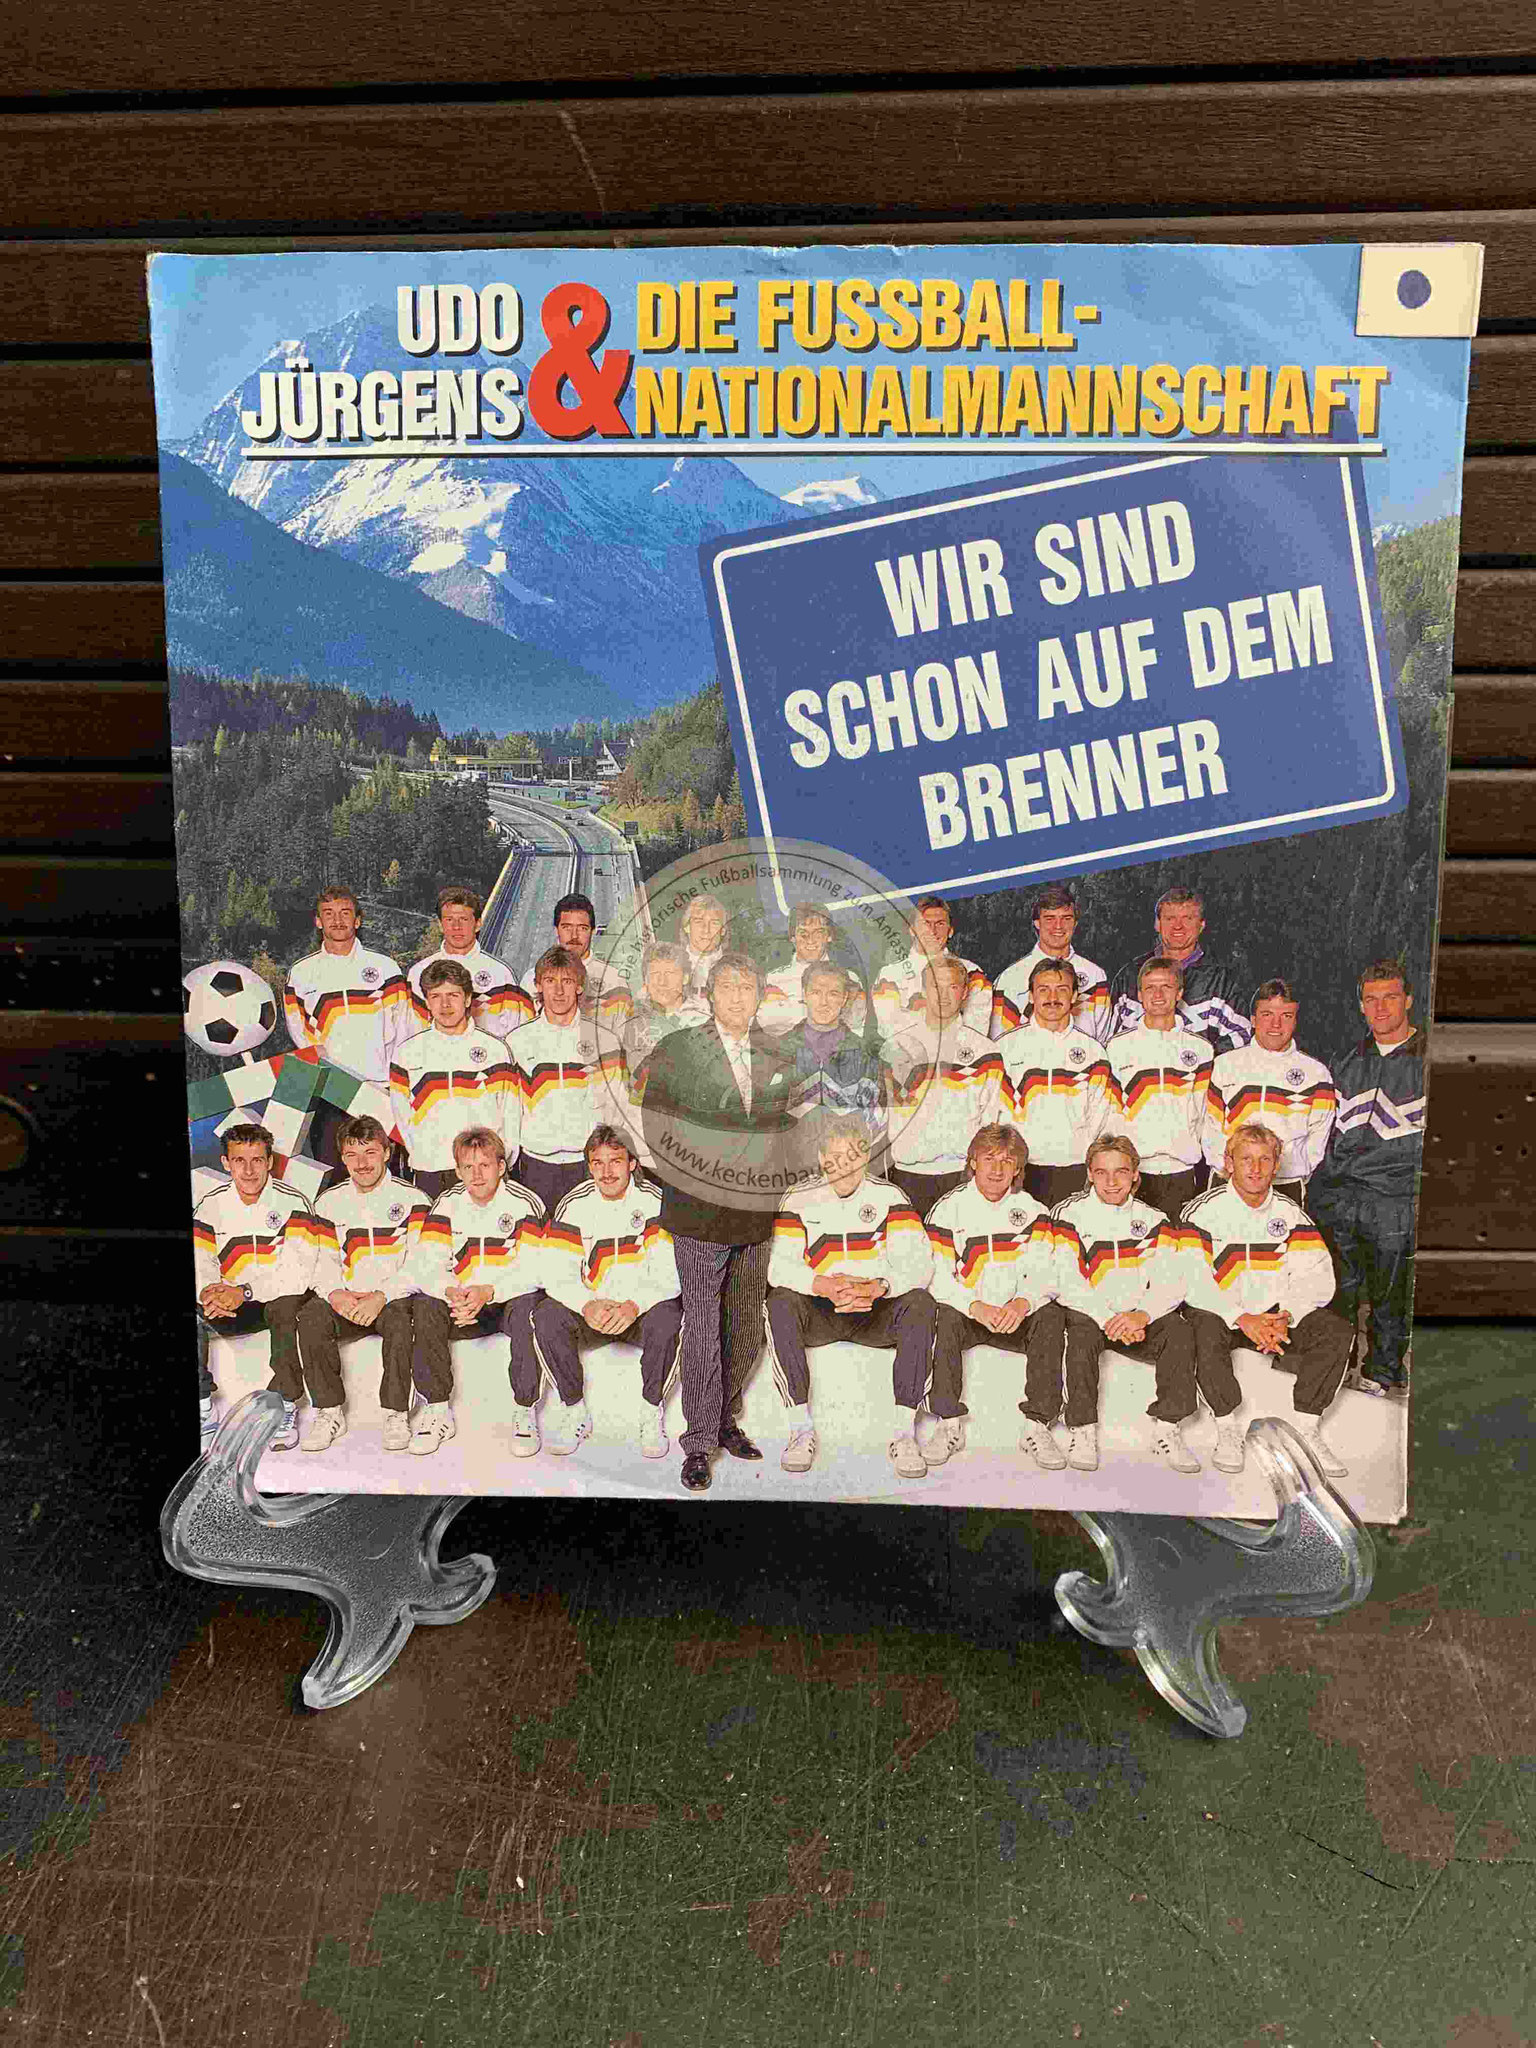 1990 Platte von Udo Jürgens und der Fußballnationalmannschaft mit "Wir sind schon auf dem Brenner"